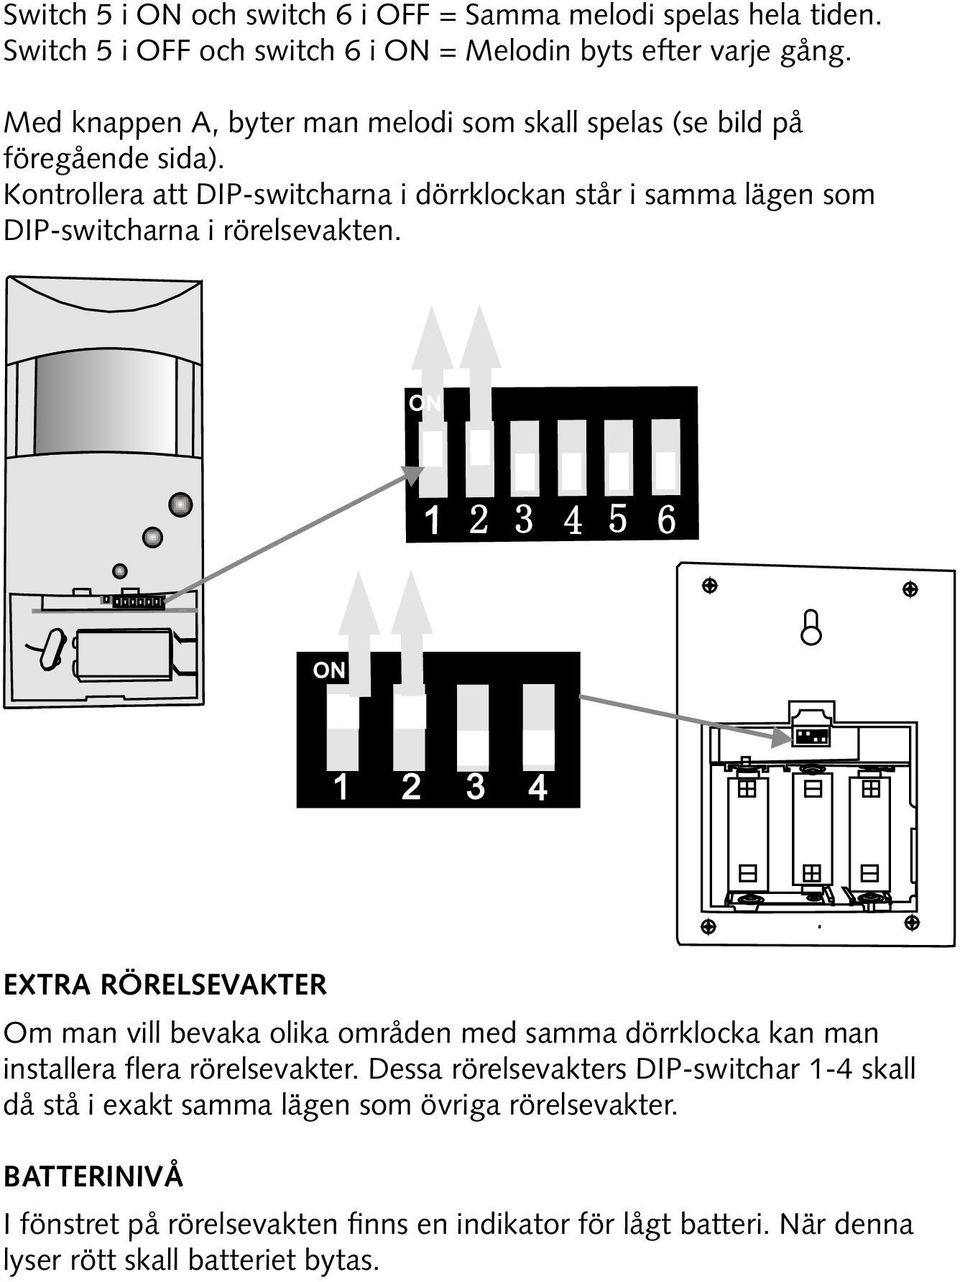 Kontrollera att DIP-switcharna i dörrklockan står i samma lägen som DIP-switcharna i rörelsevakten.